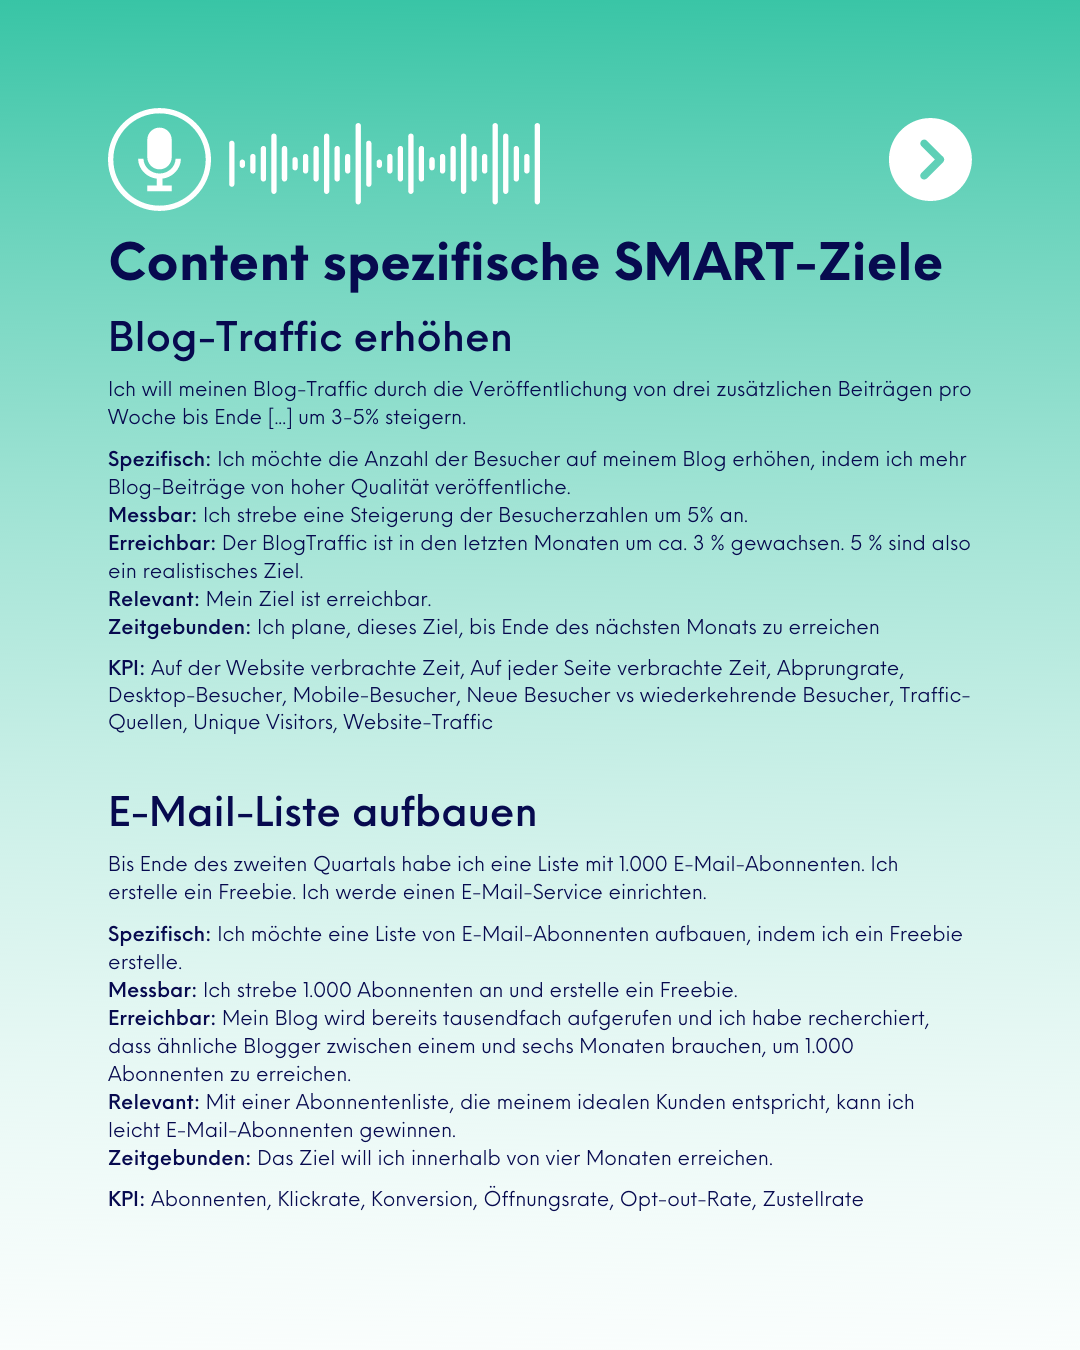 Allgemeine SMART-Ziele: Blog-Traffic und E-Mail-Liste